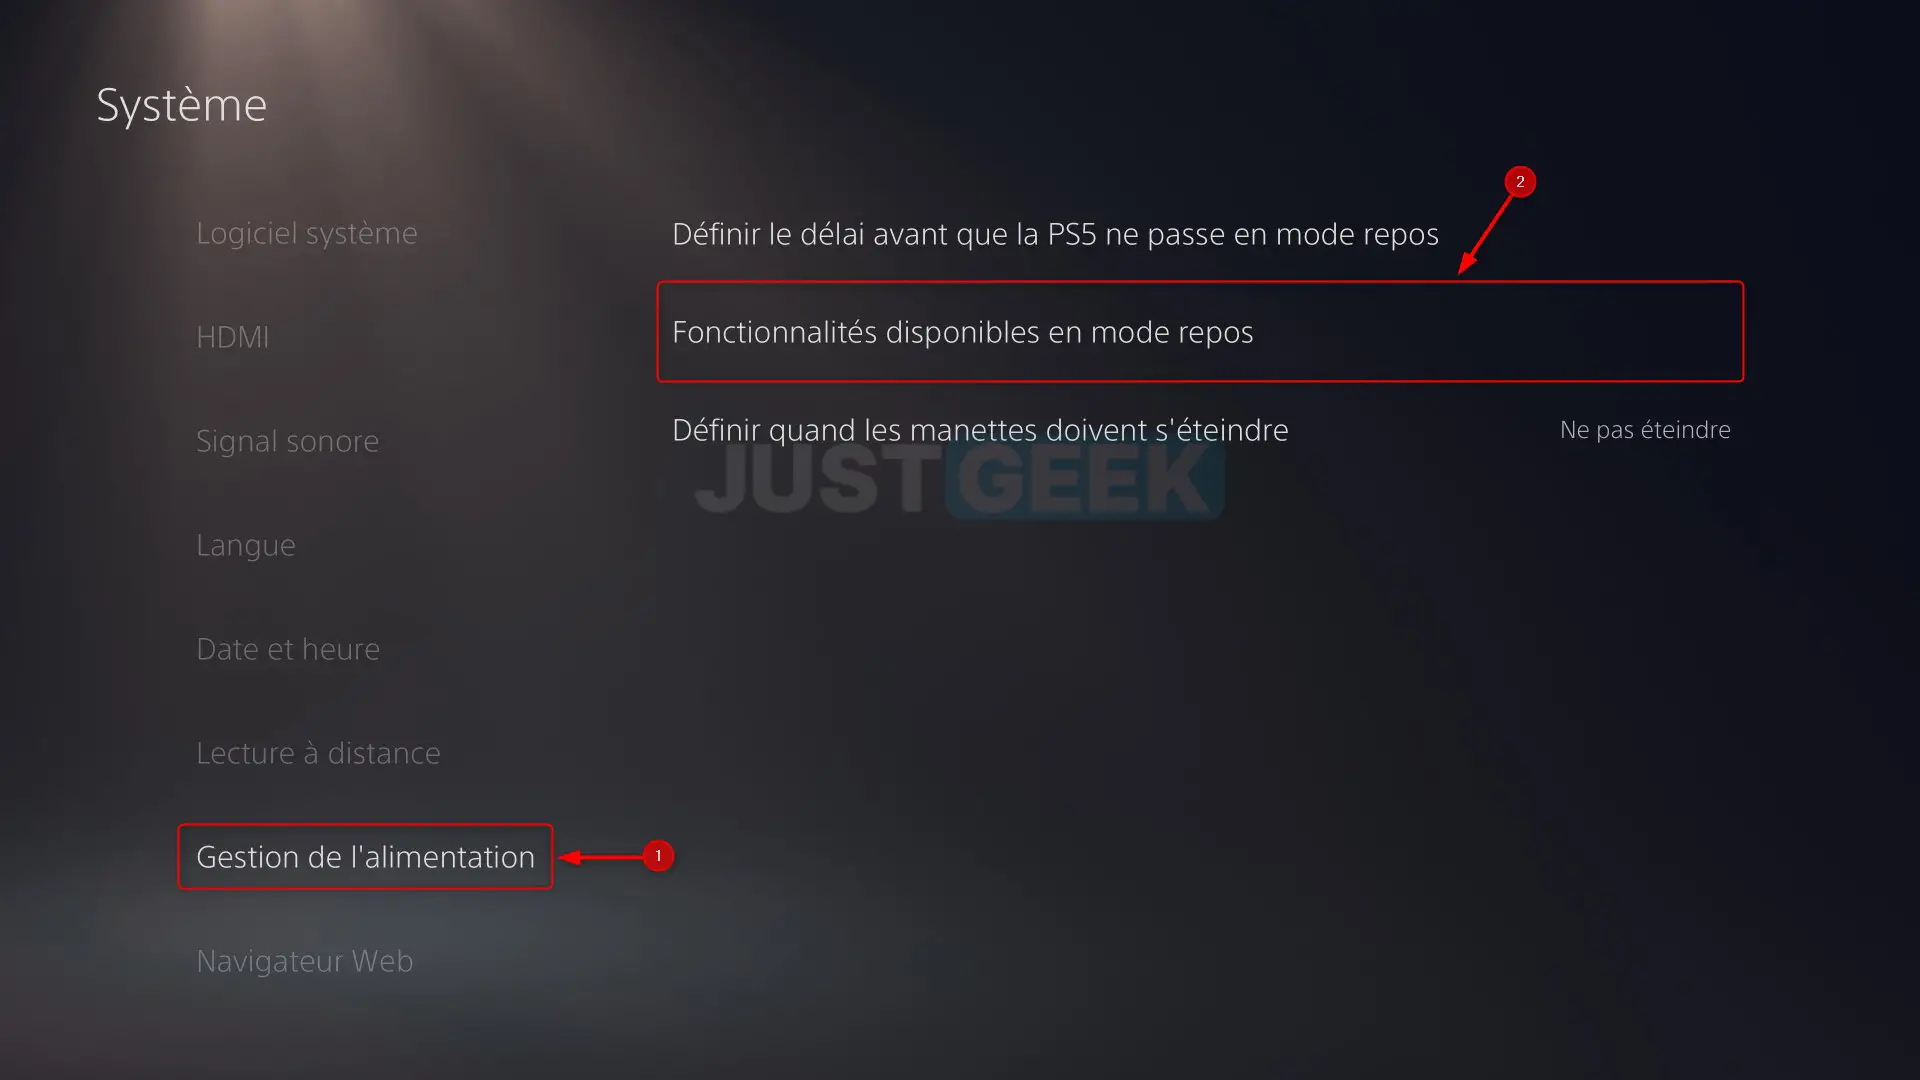 Menu 'Gestion de l'alimentation' dans les paramètres de la PlayStation 5, montrant l'option pour accéder aux 'Fonctionnalités disponibles en mode repos'.